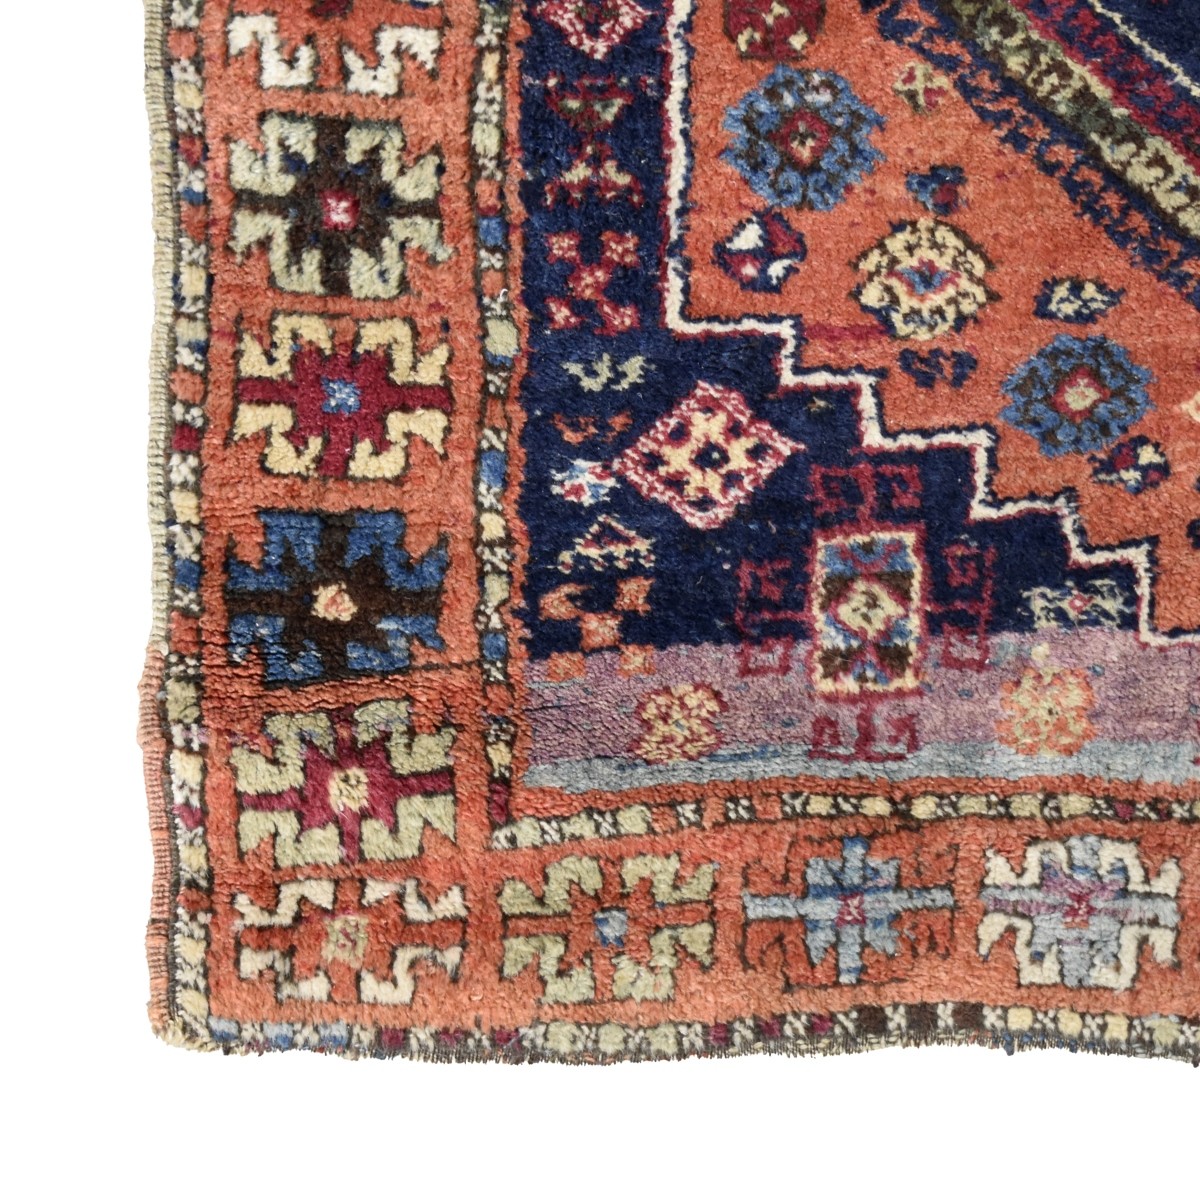 Semi Antique Persian Hamadan Rug